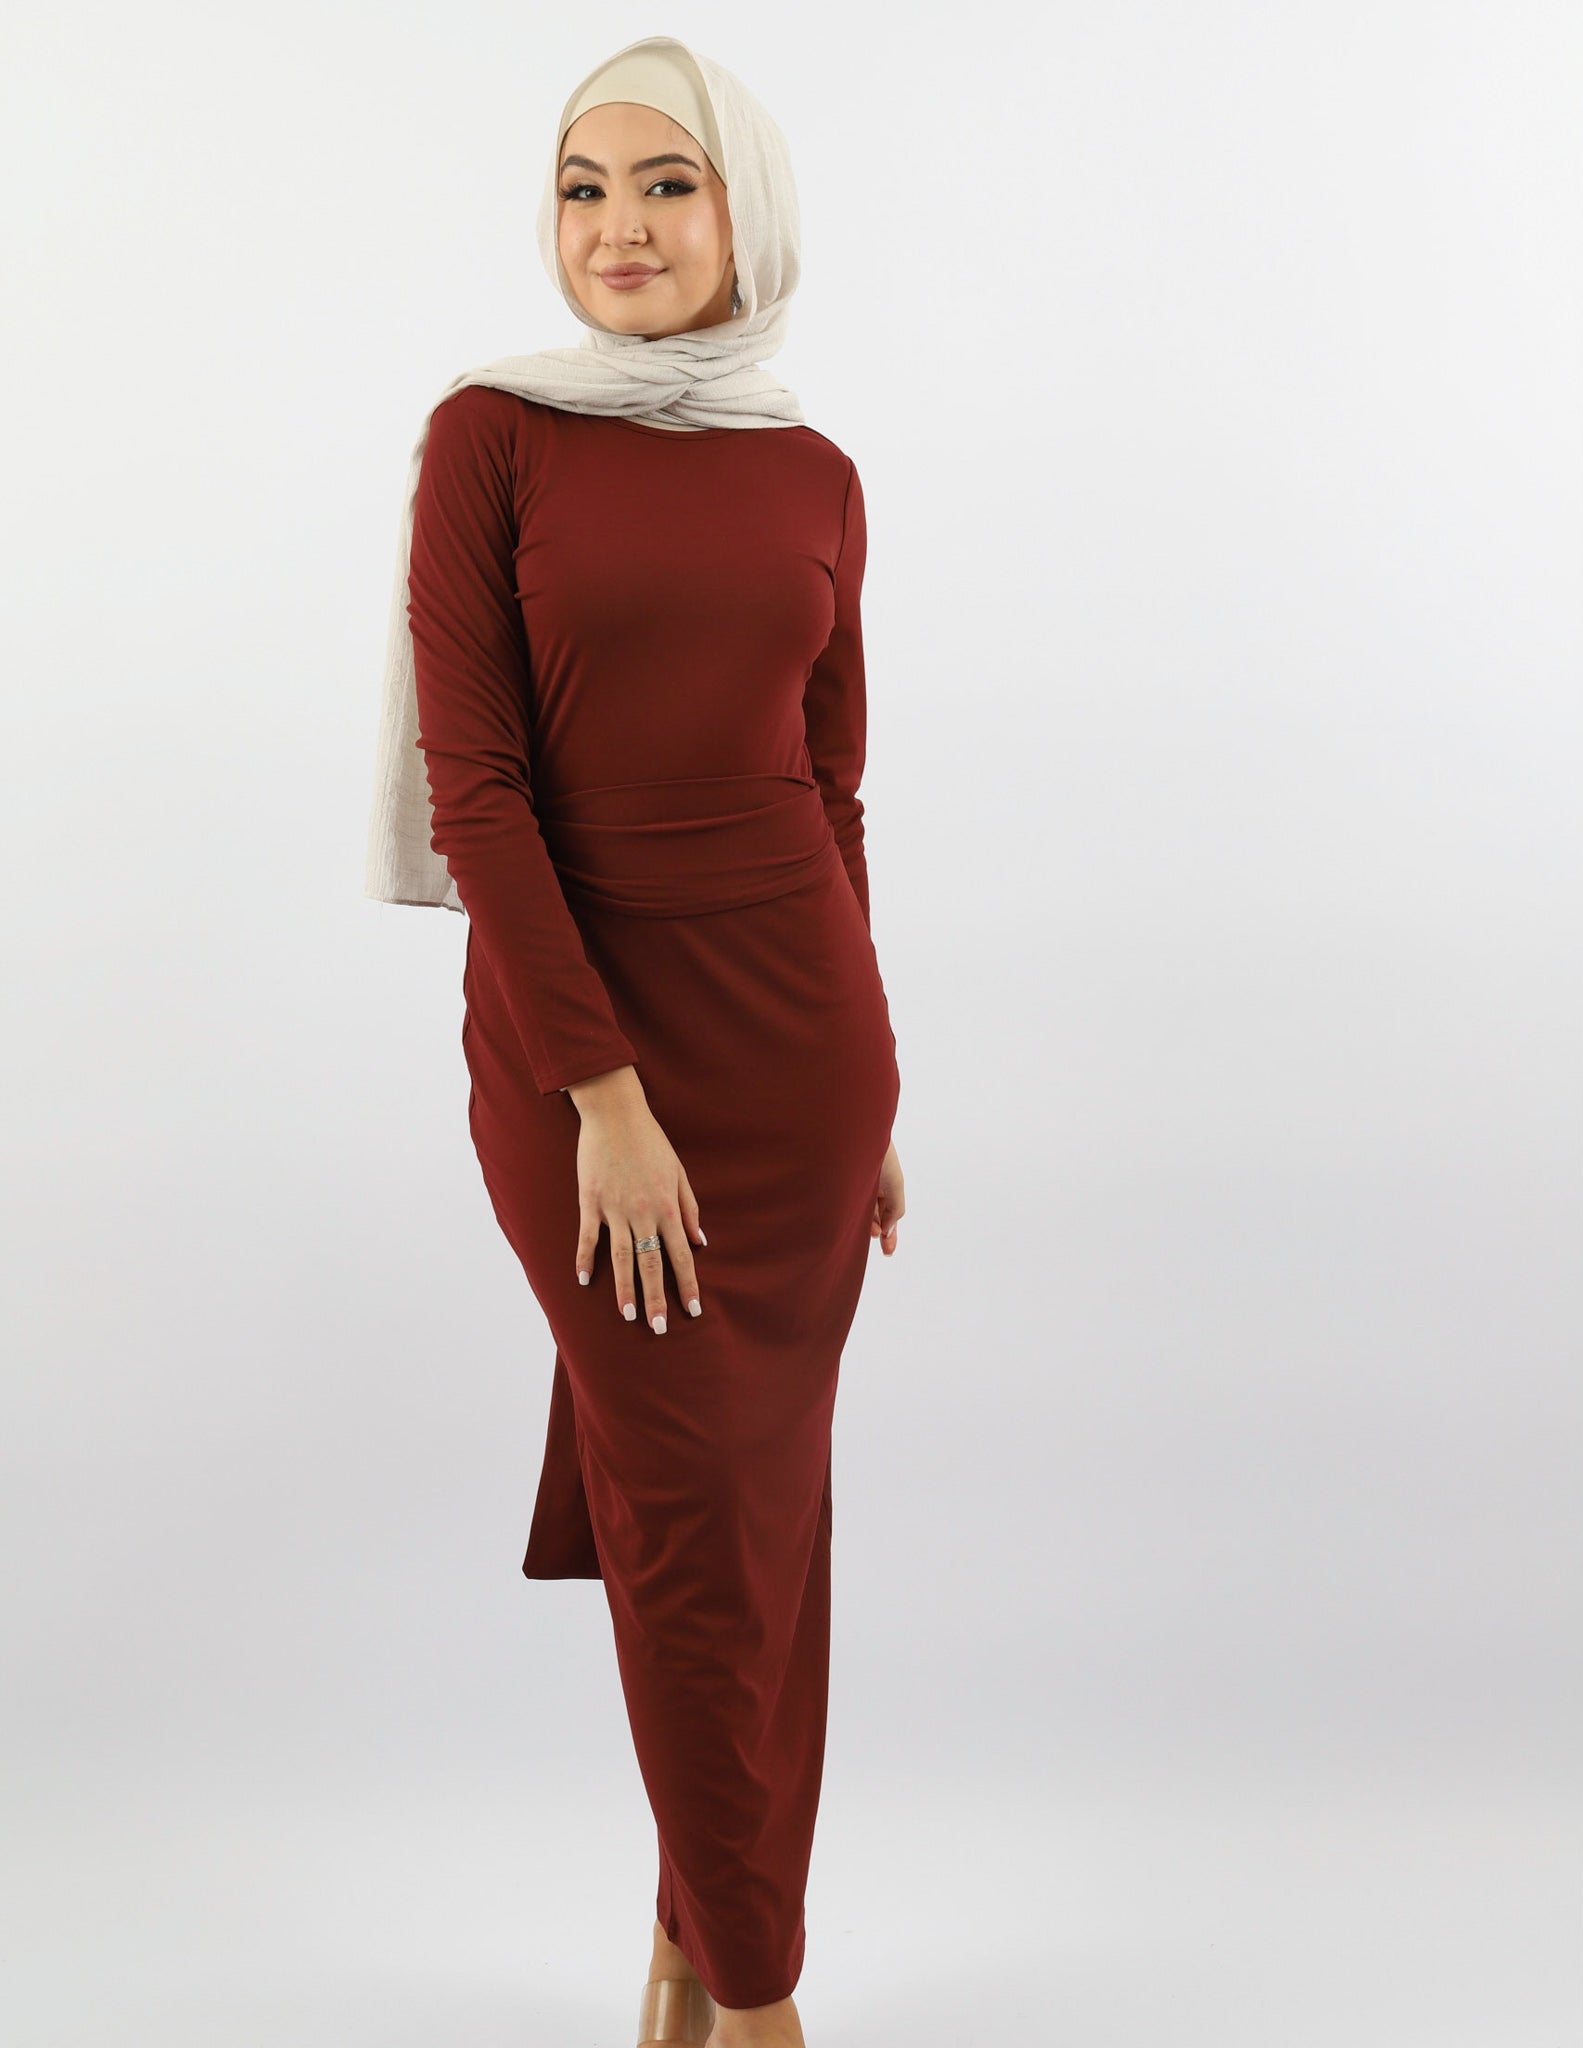 M7951Mahogany-dress-abaya